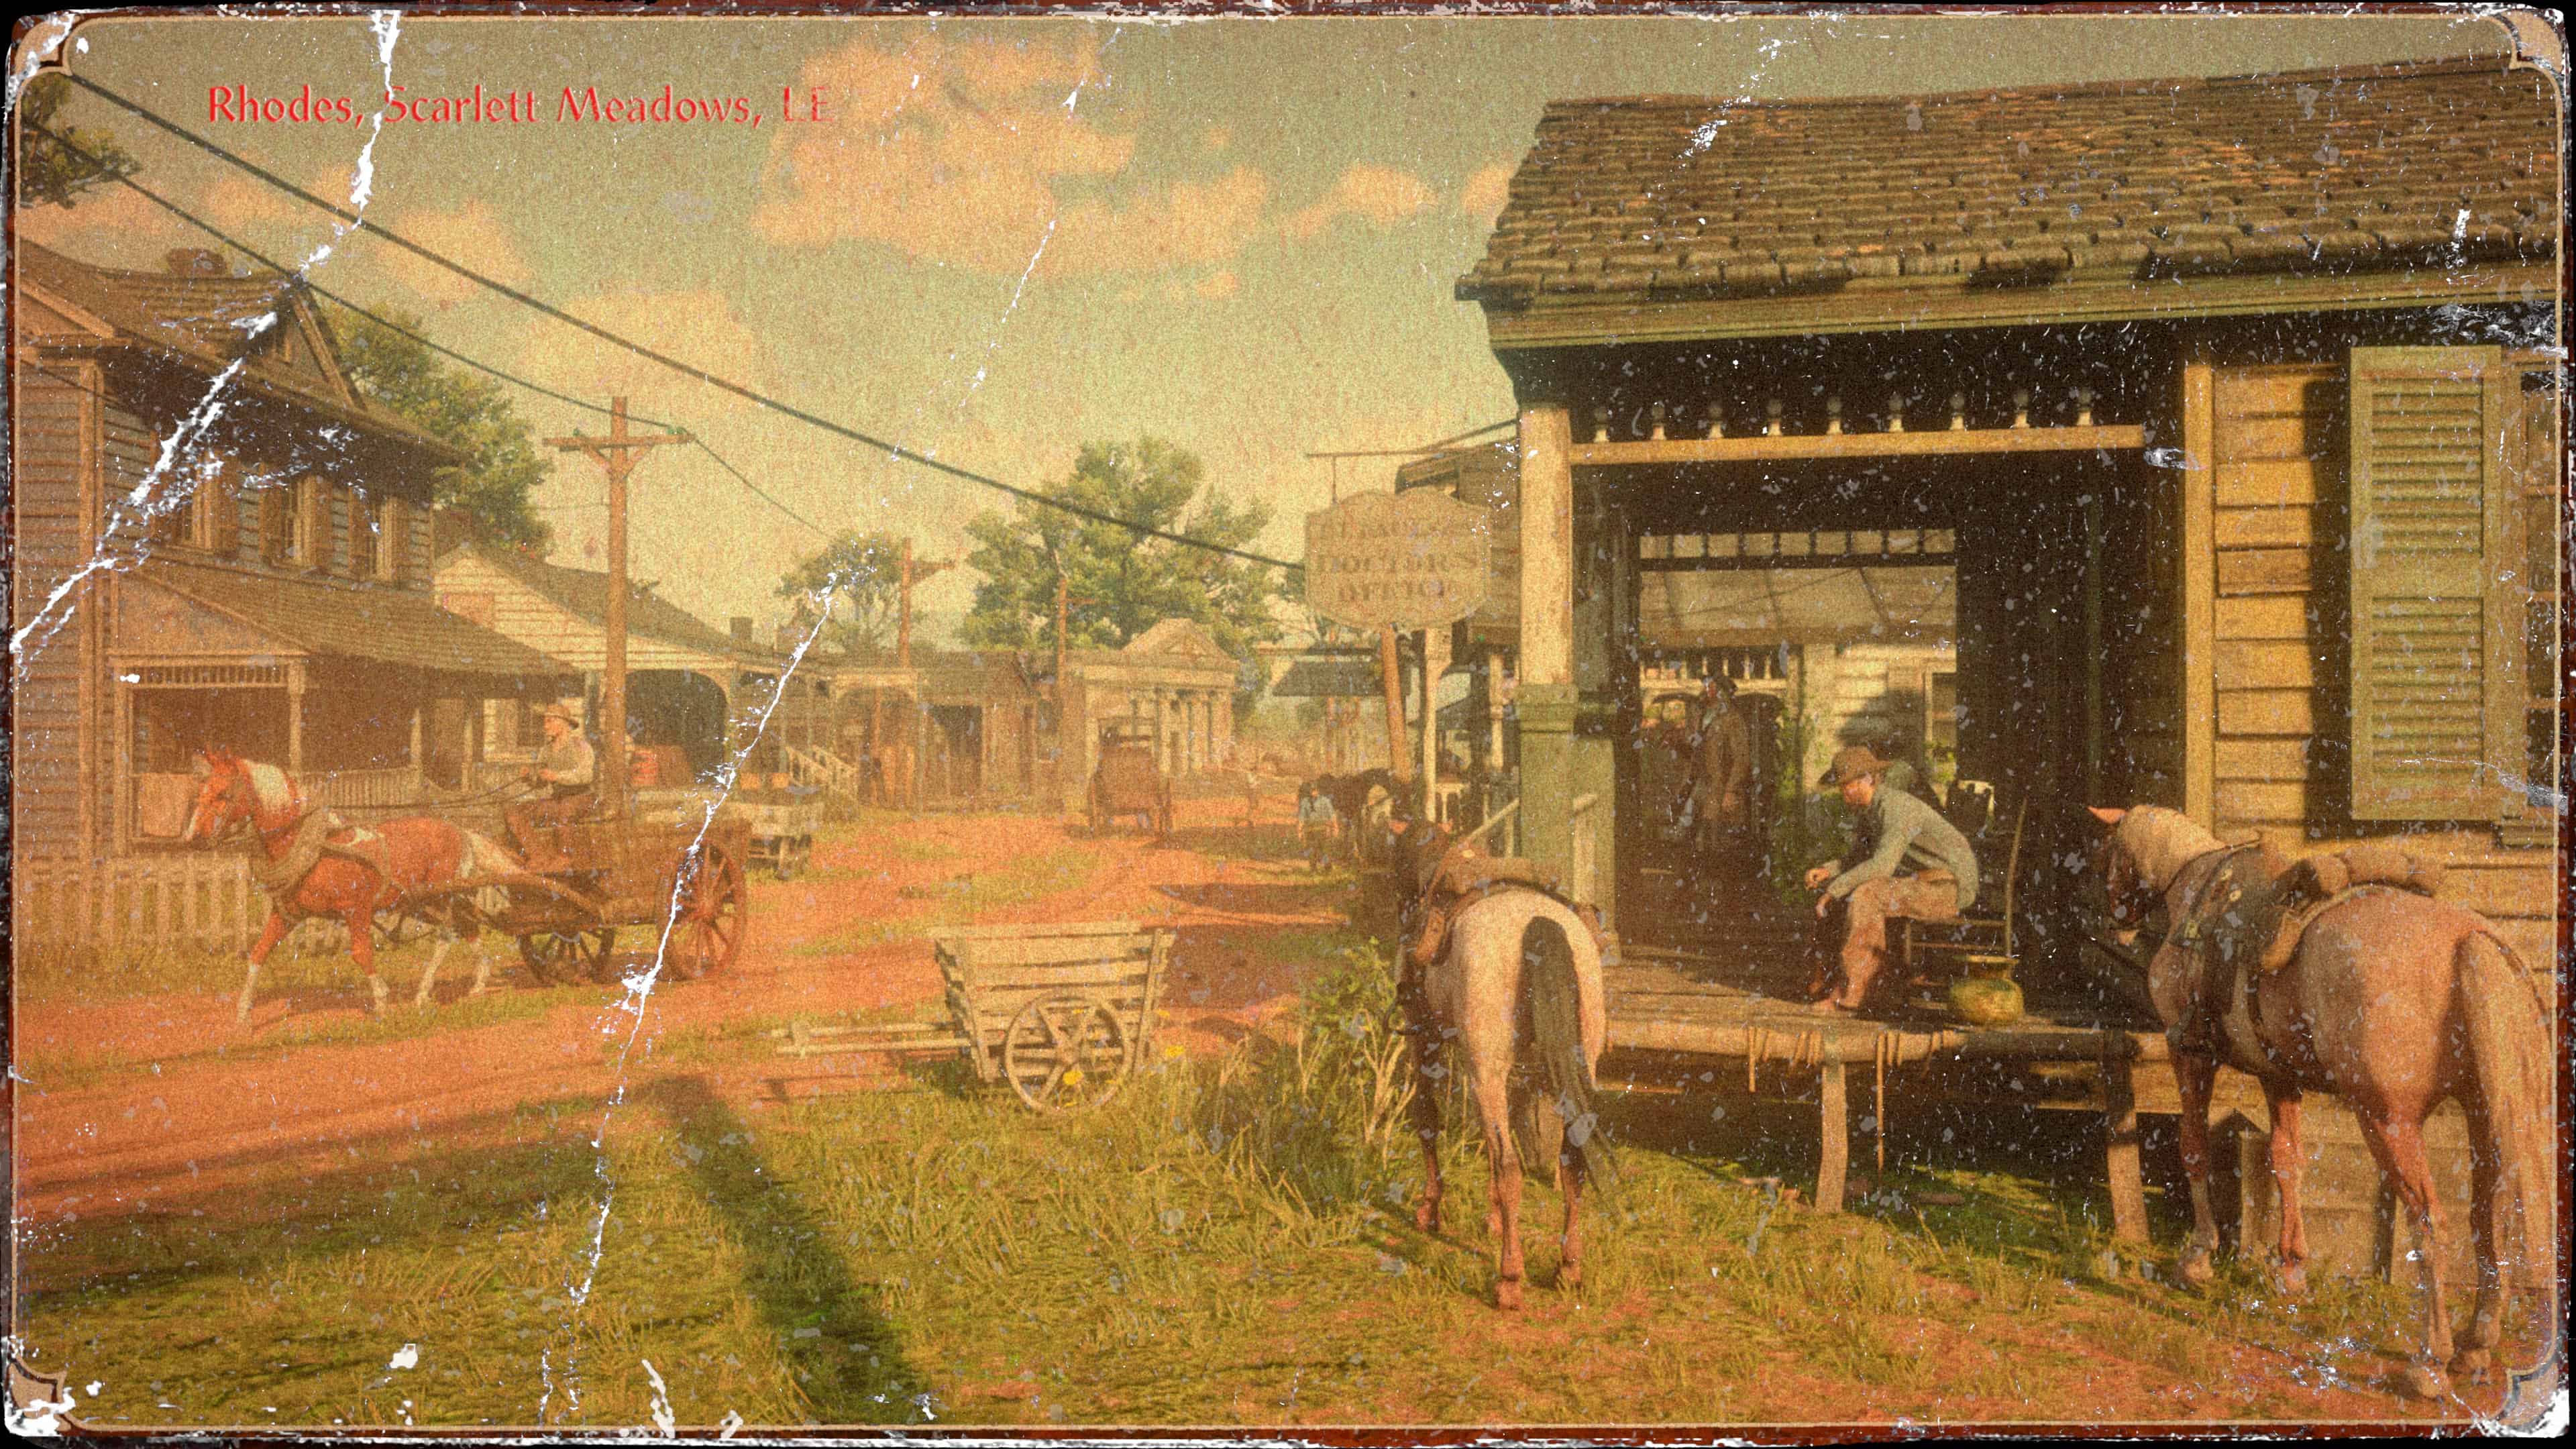 《荒野大镖客2》新截图 1899年的西部小镇和城市